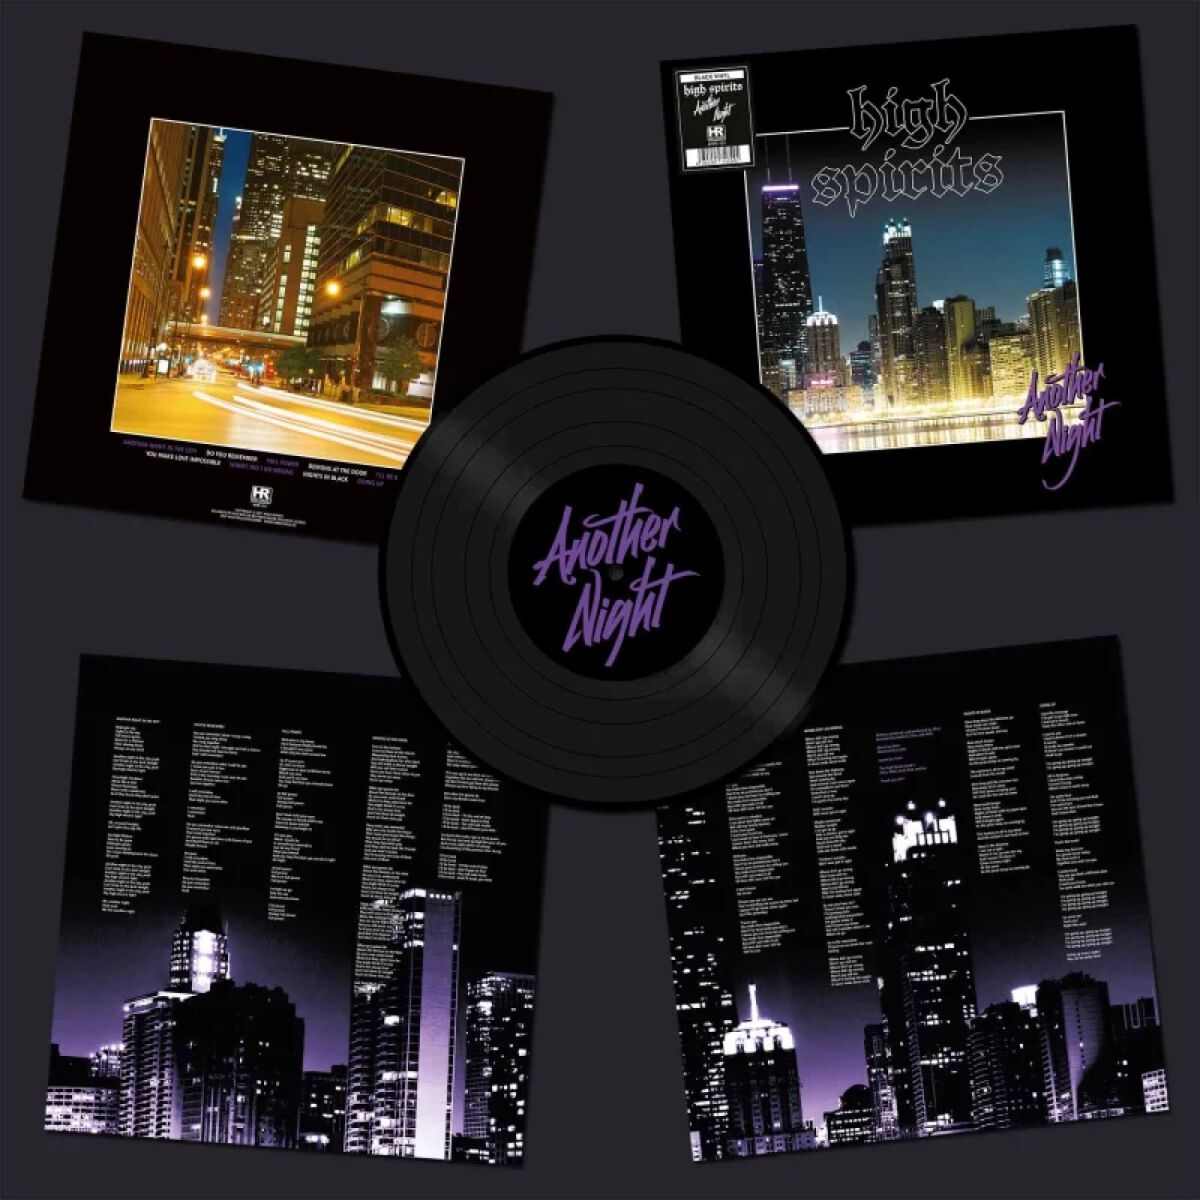 Another night von High Spirits - LP (Limited Edition, Standard)